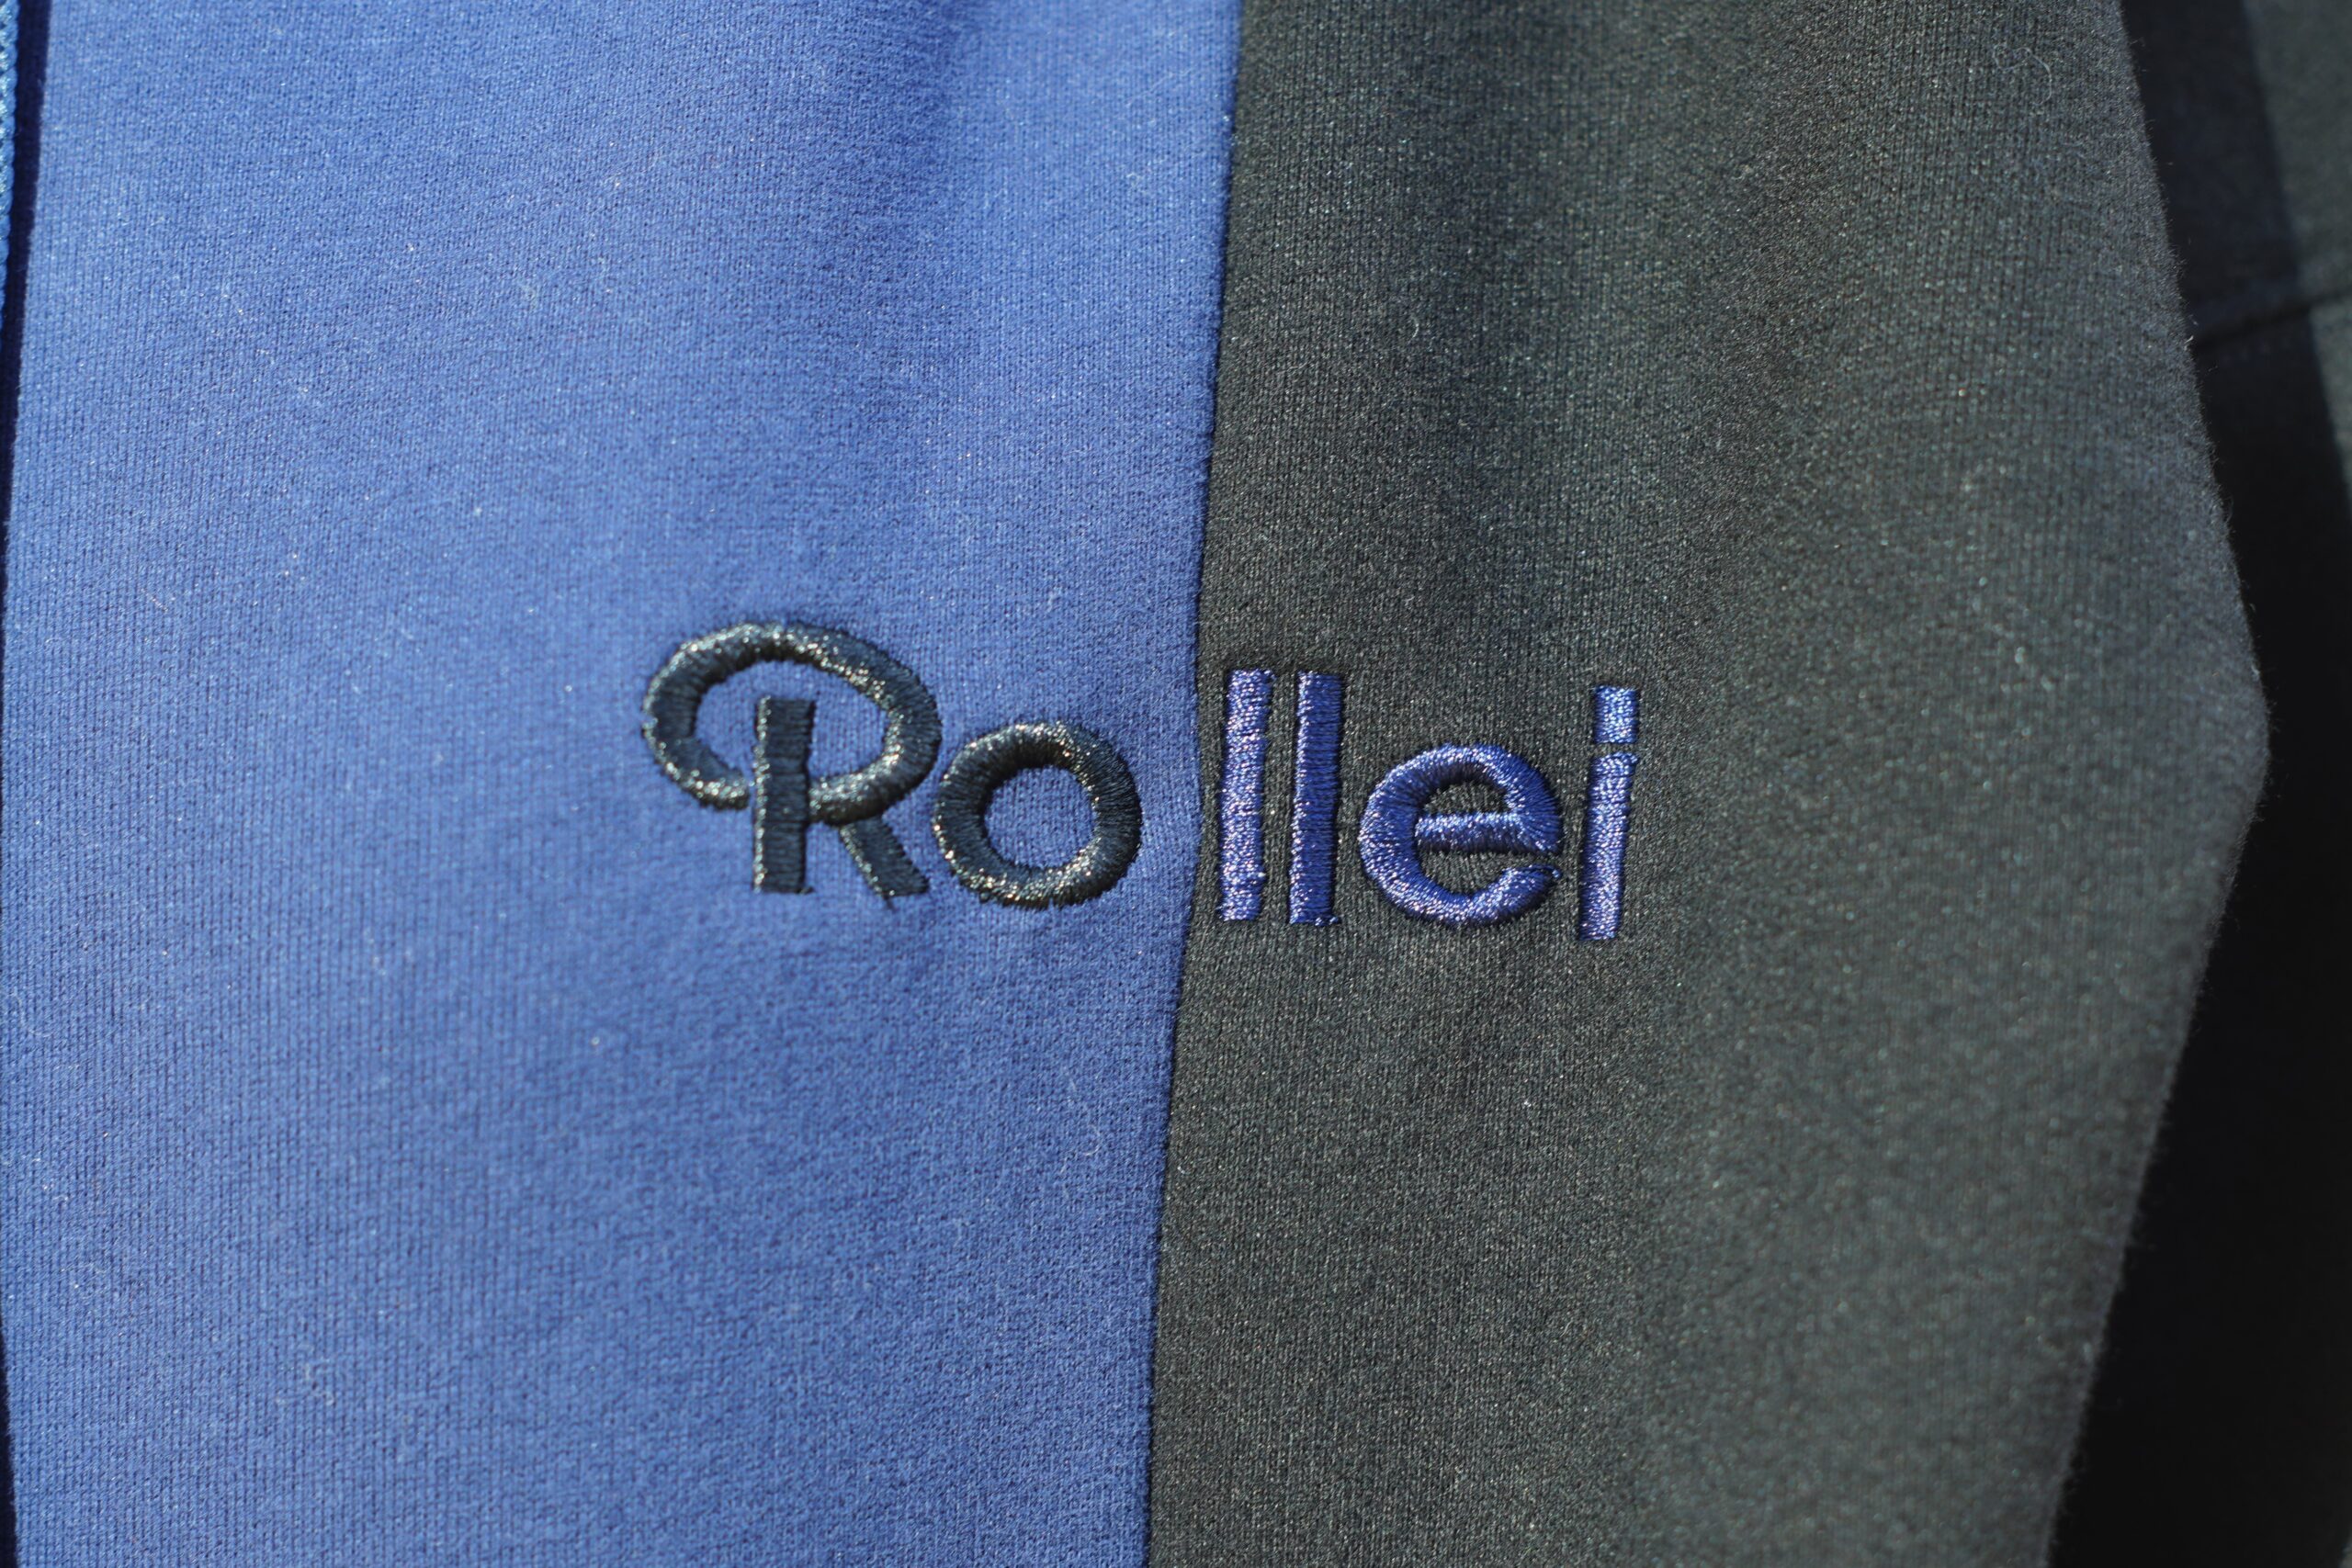 ローライ(Rollei)”公式プロダクト